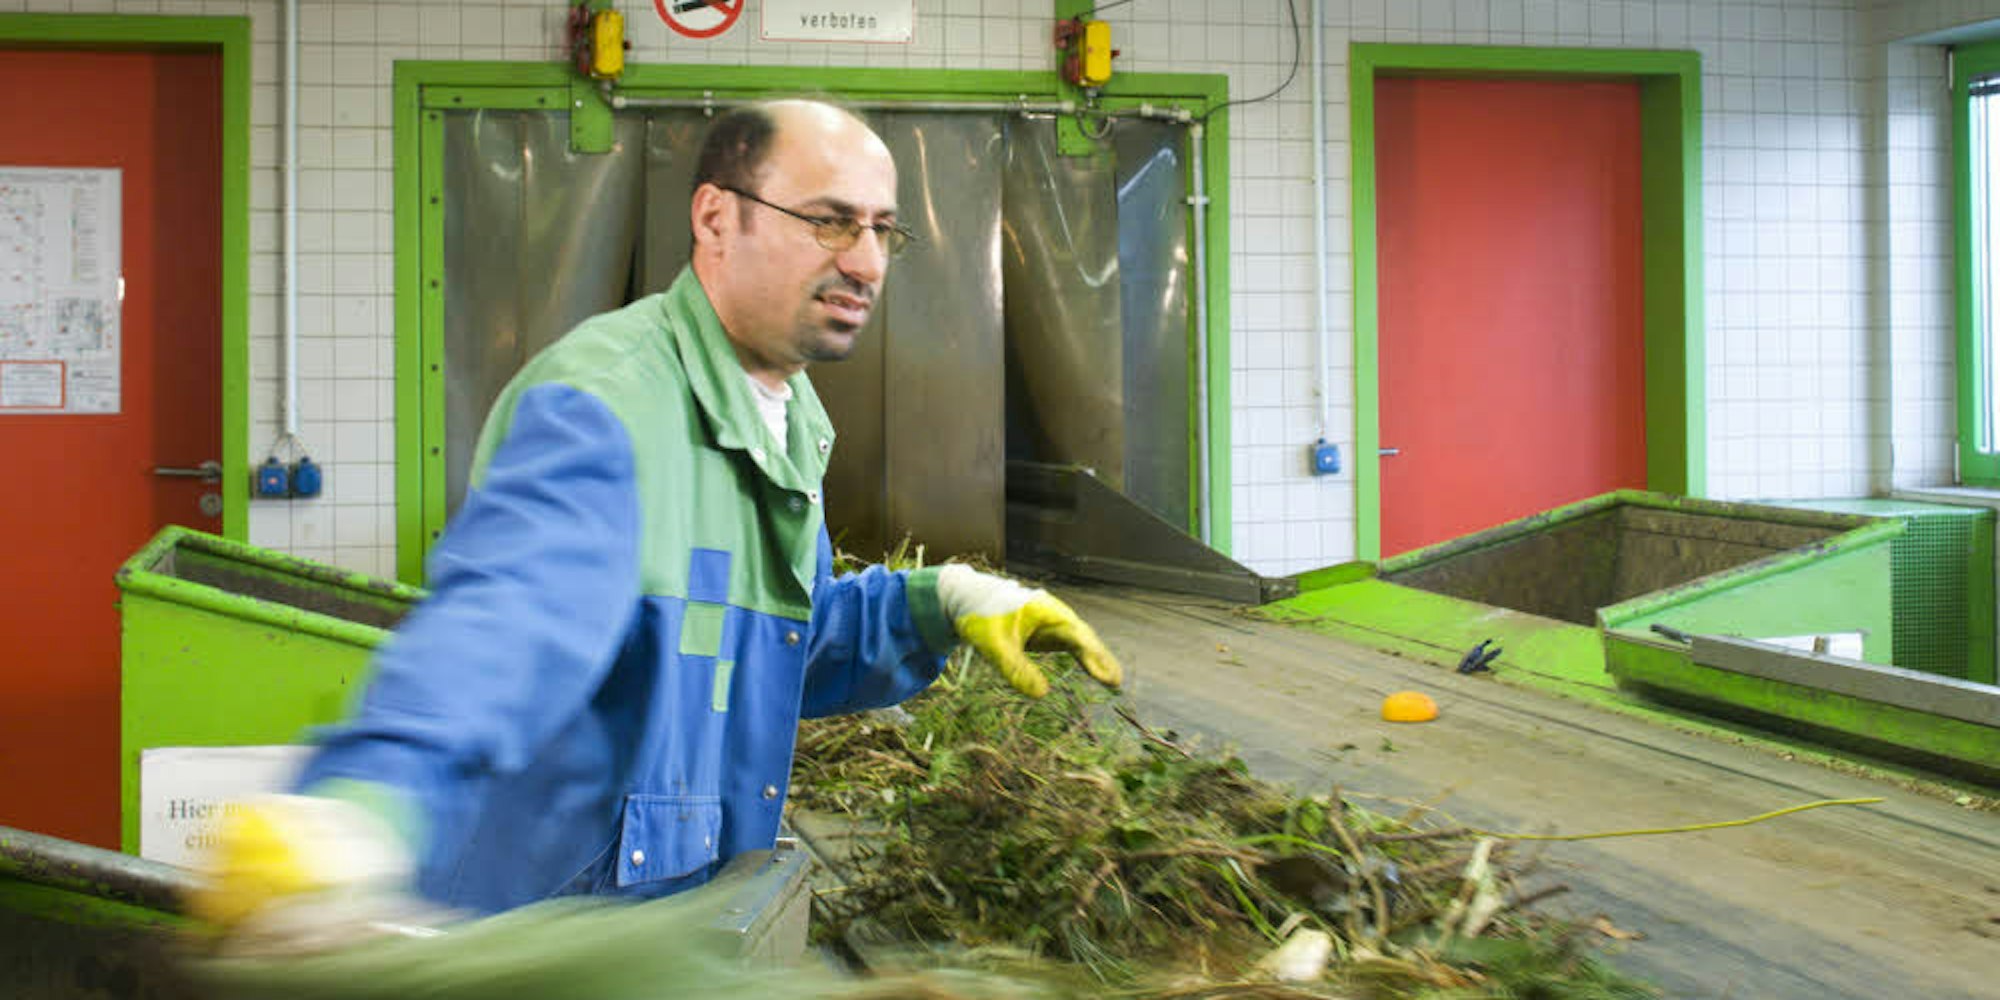 Raus damit! Am Band zur Kompostierungsanlage sortieren Mitarbeiter Störstoffe aus – darunter auch grüne Folienbeutel.